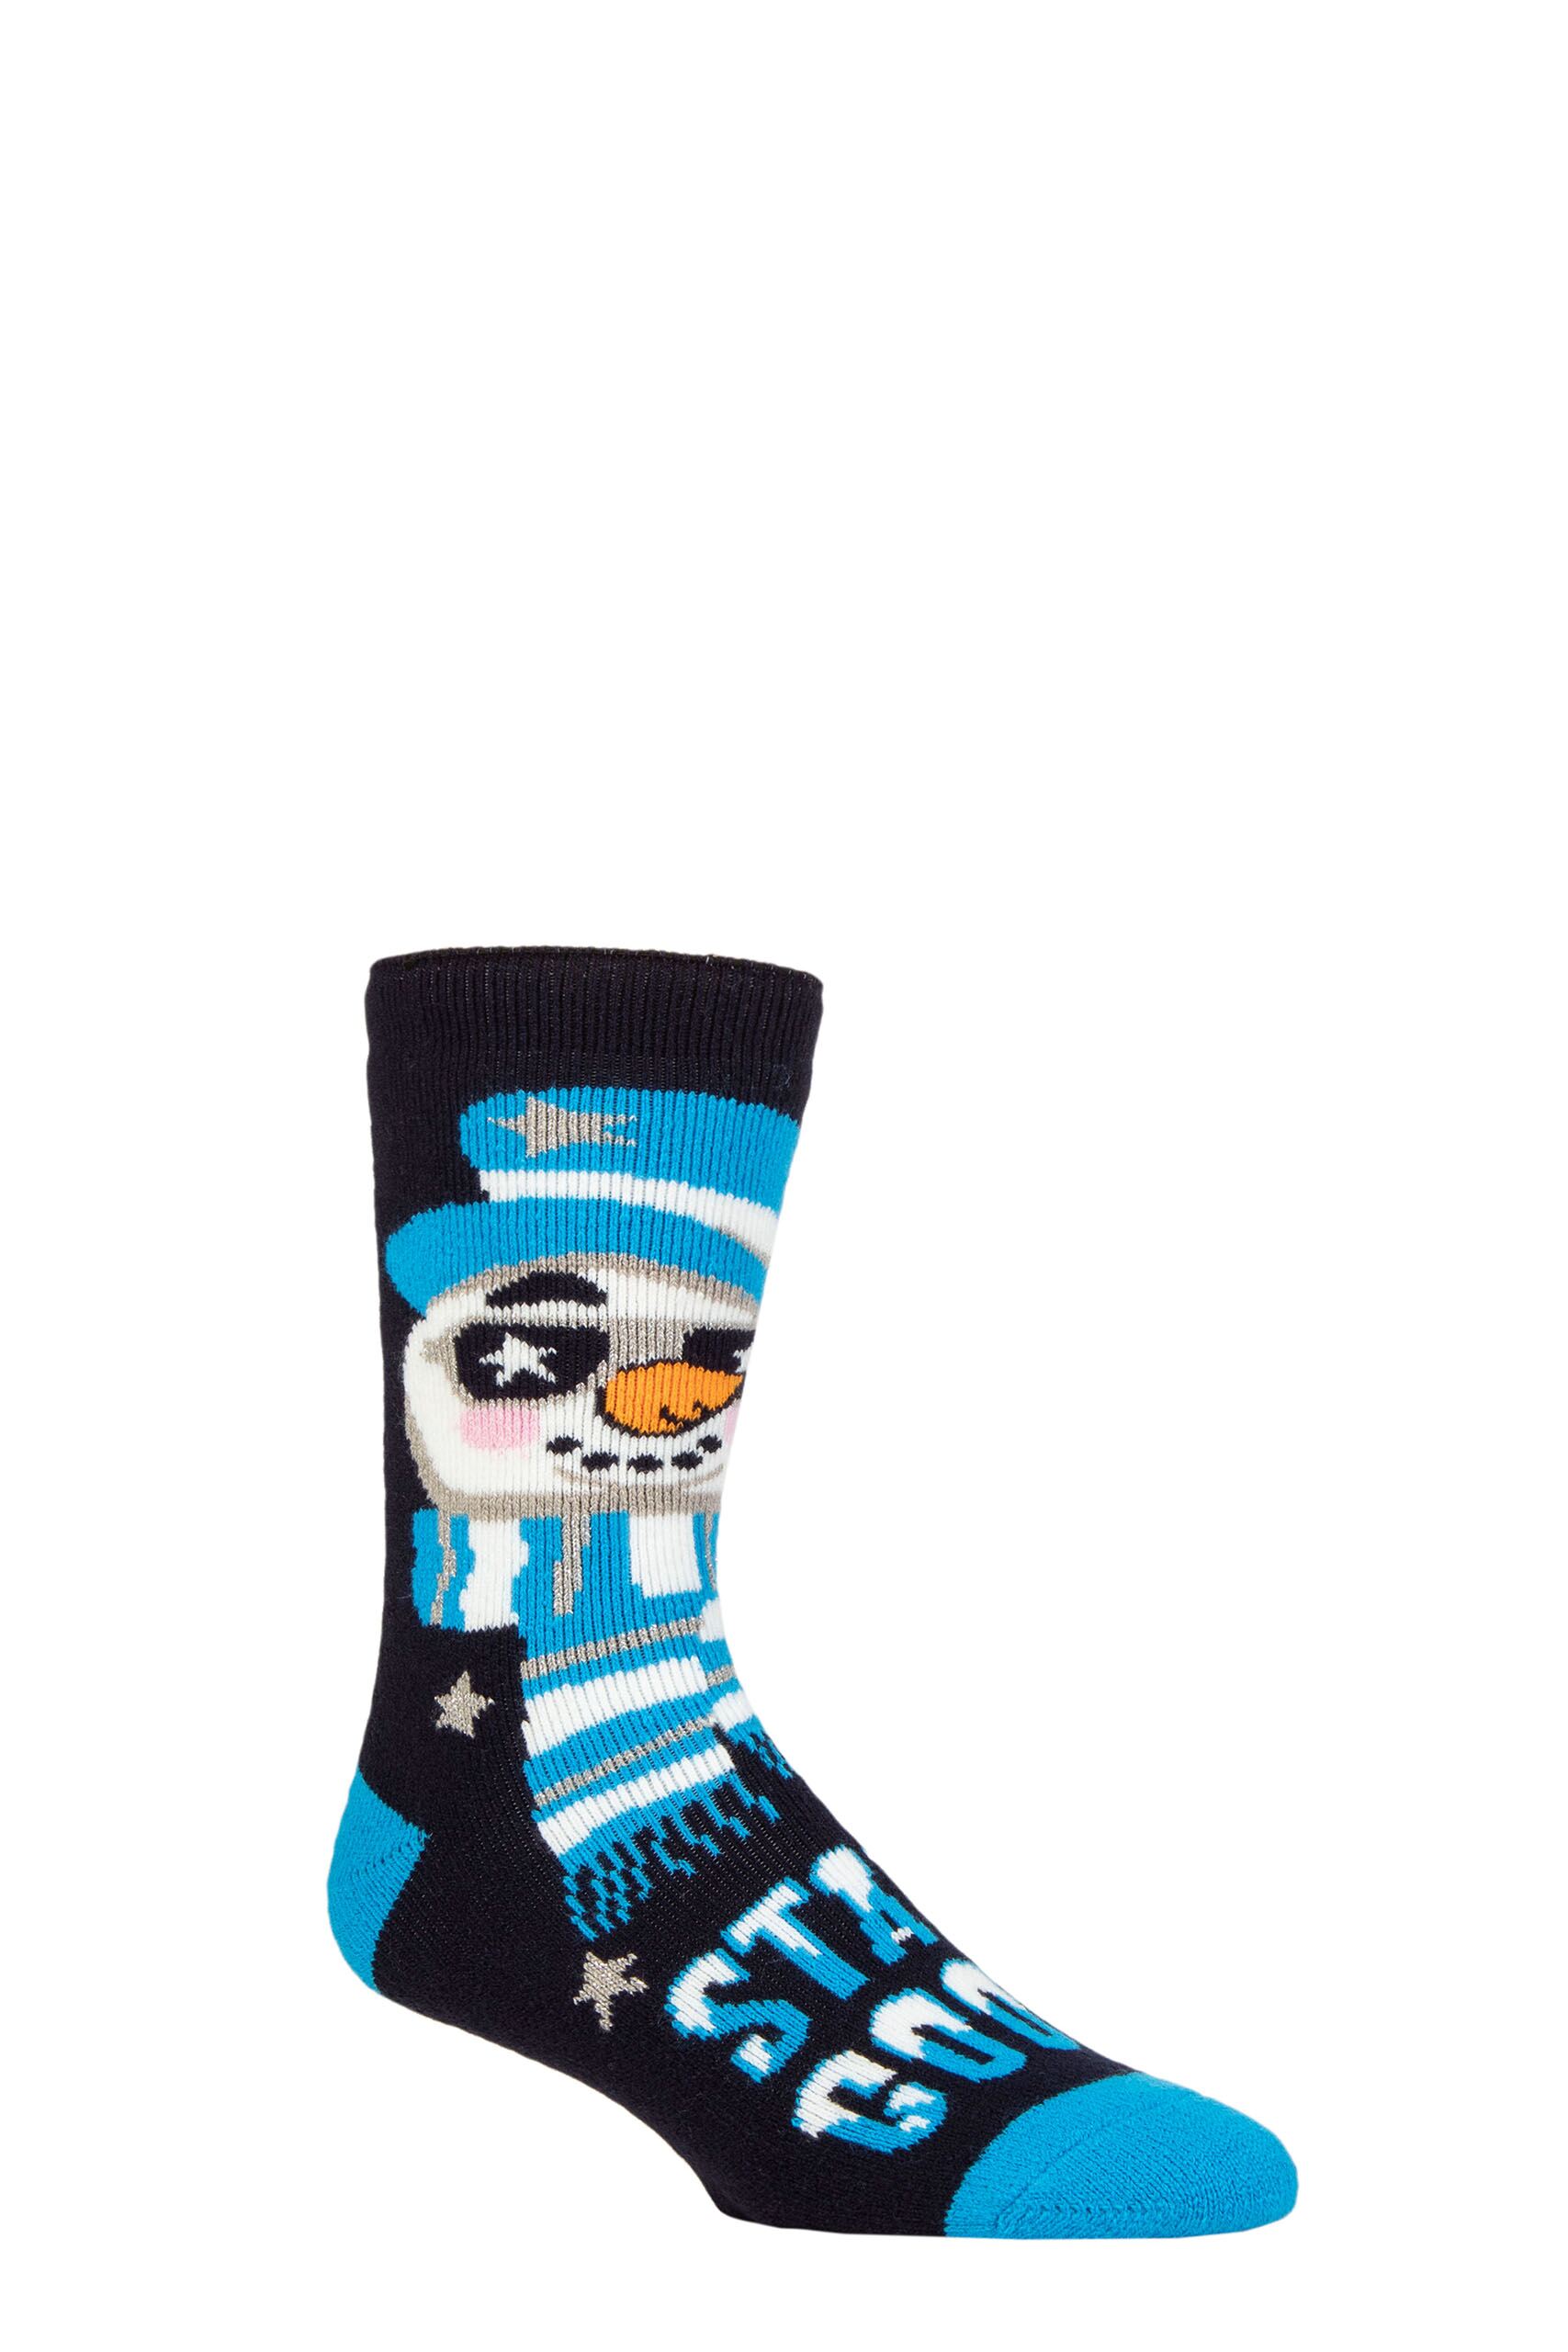 Mens 1 Pair SOCKSHOP Heat Holders 1.6 TOG Lite Christmas Socks Superstar Snowman 6-11